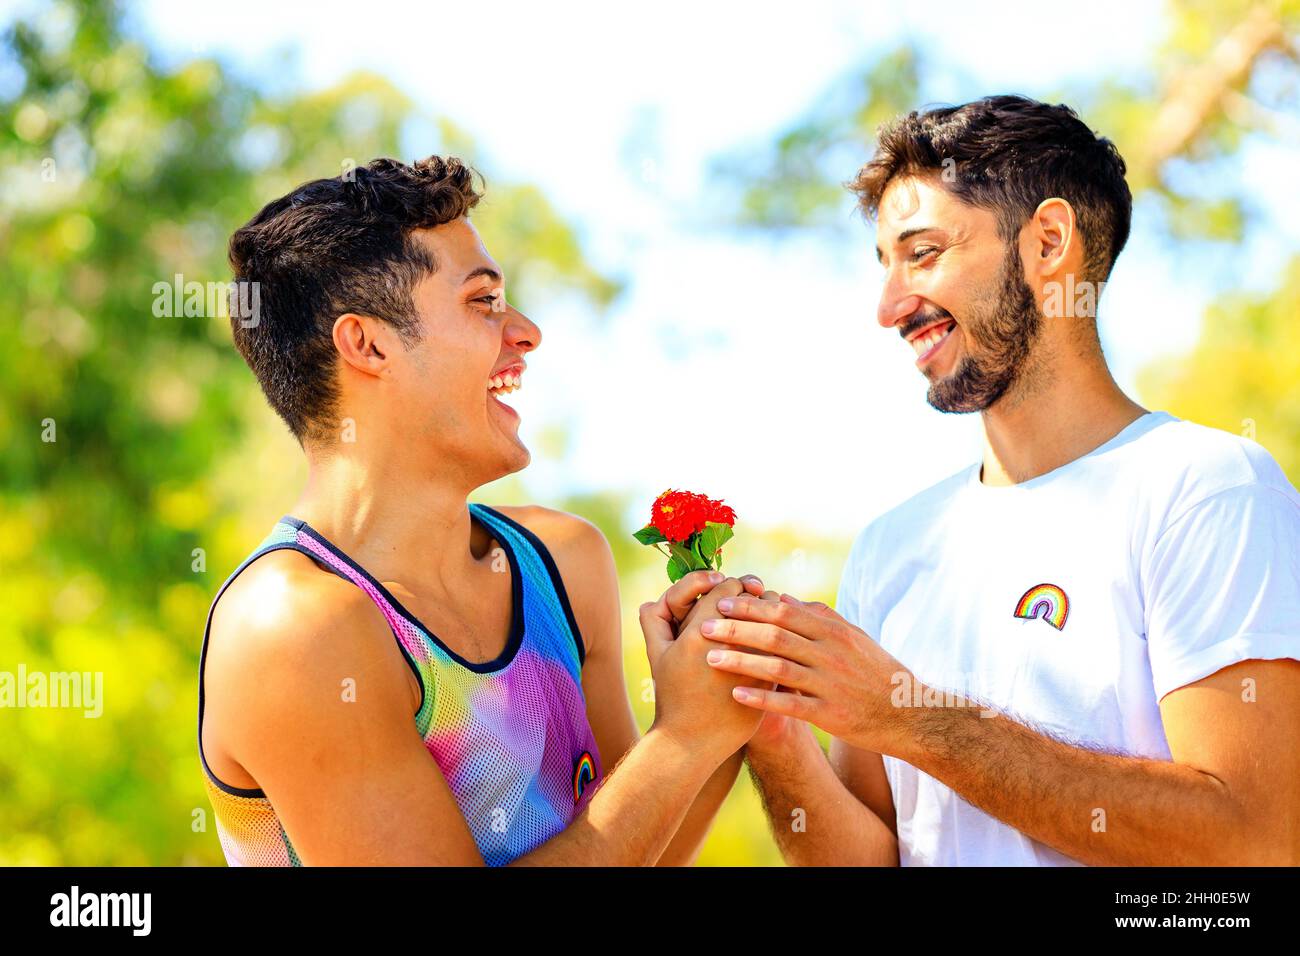 Un couple gay heureux passe du temps ensemble dans une journée ensoleillée dans un parc verdoyant Banque D'Images